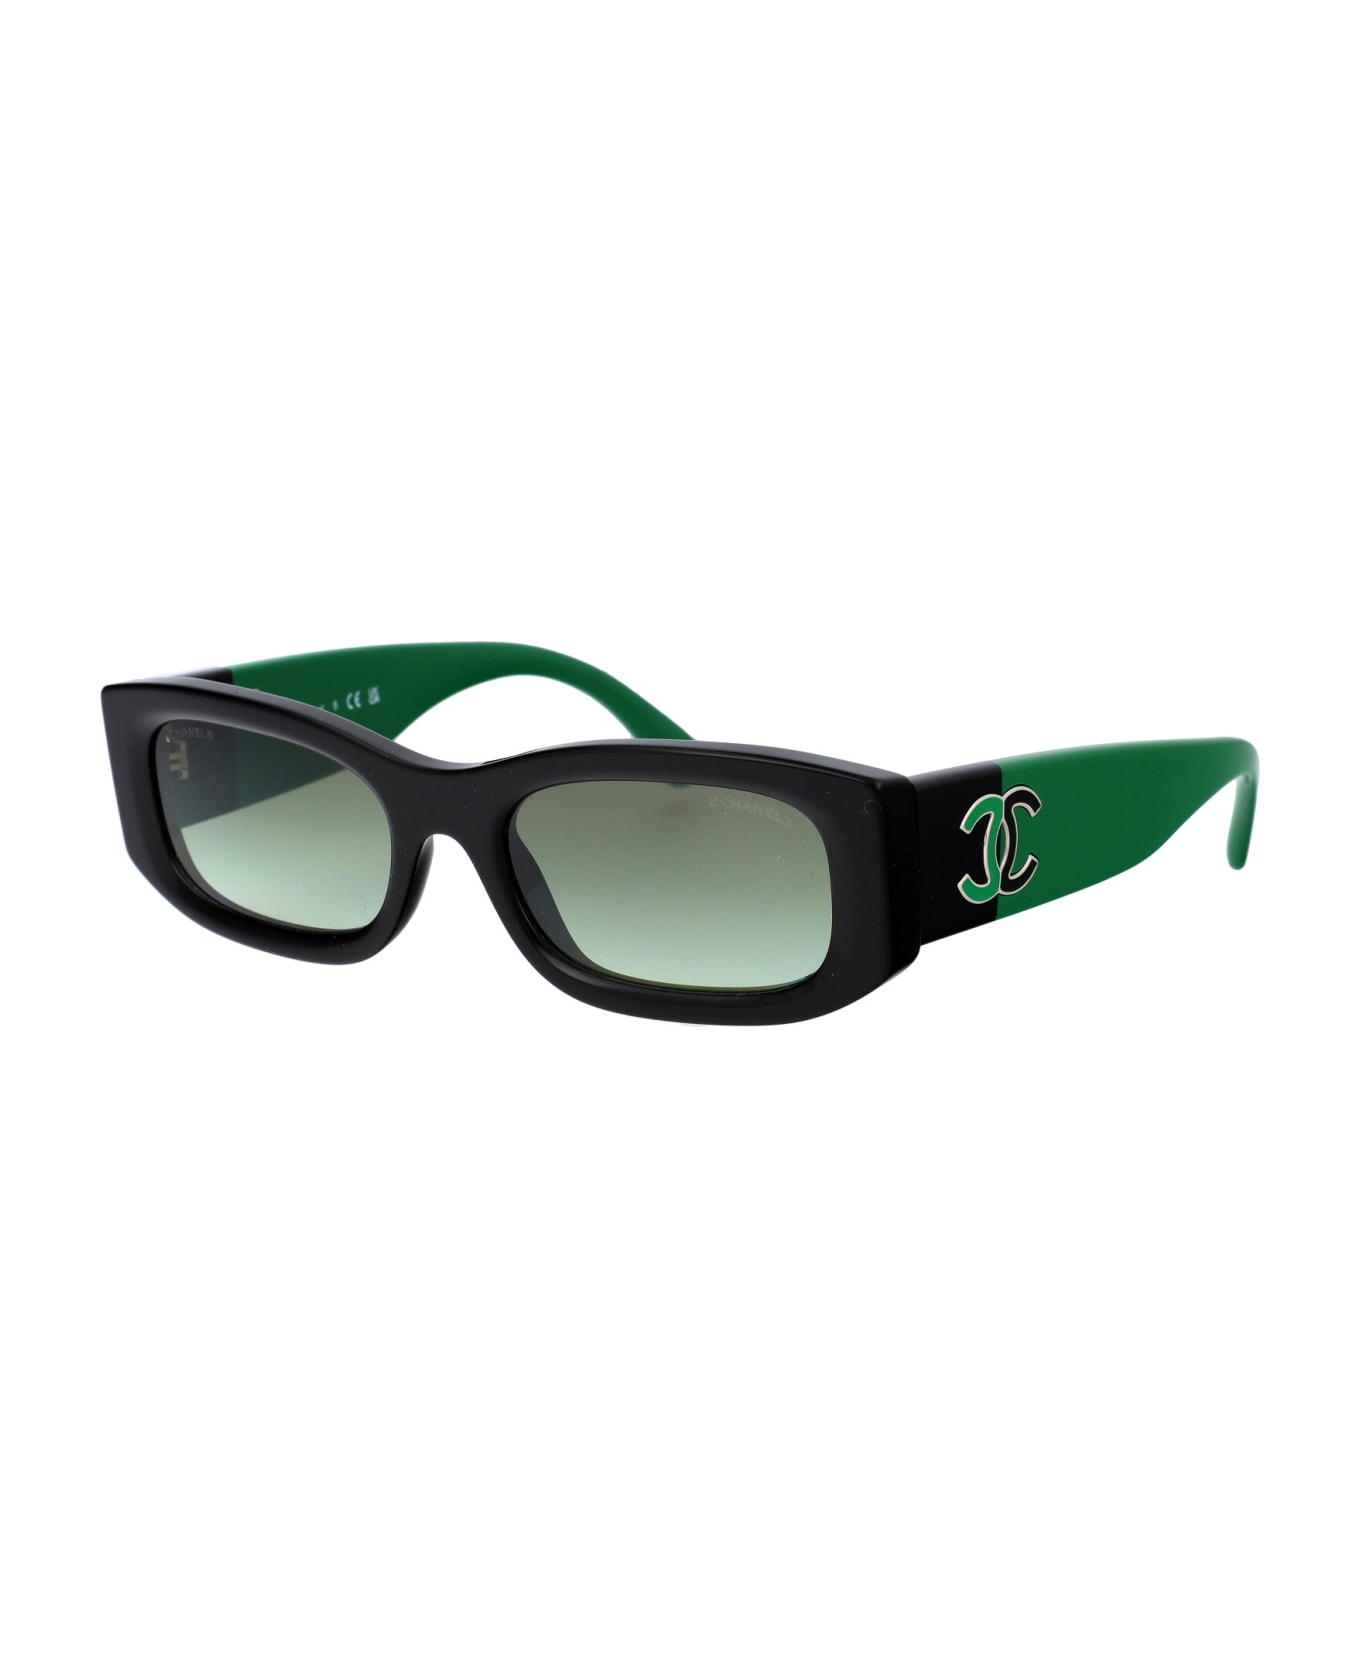 Chanel 0ch5525 Sunglasses - 17728E BLACK